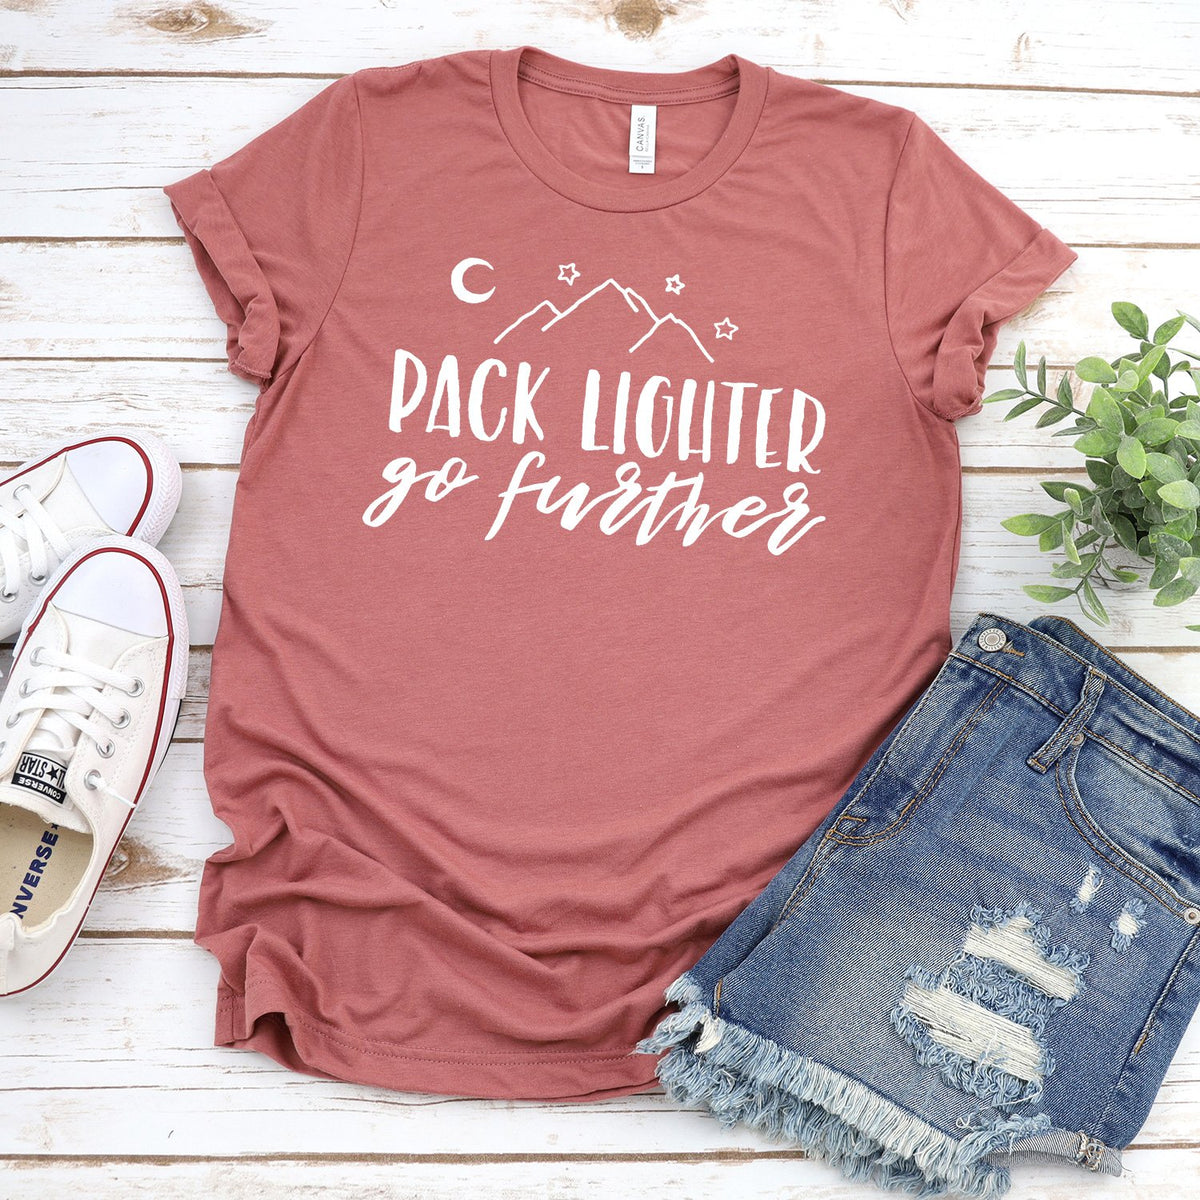 Pack Lighter Go Further - Short Sleeve Tee Shirt